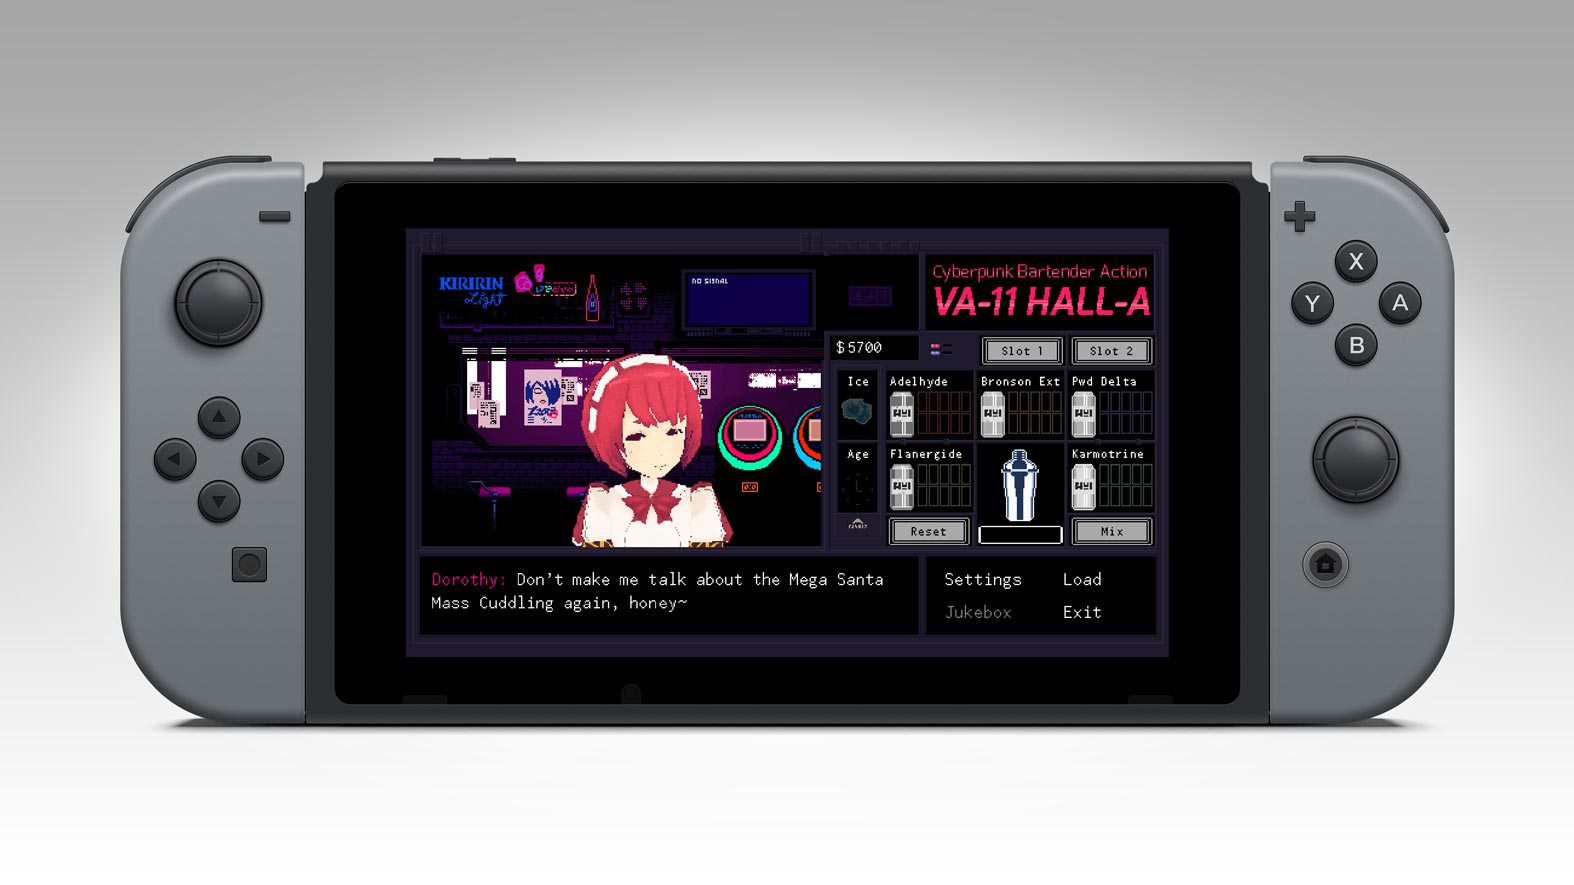 VA-11 Hall-A switch dorothy